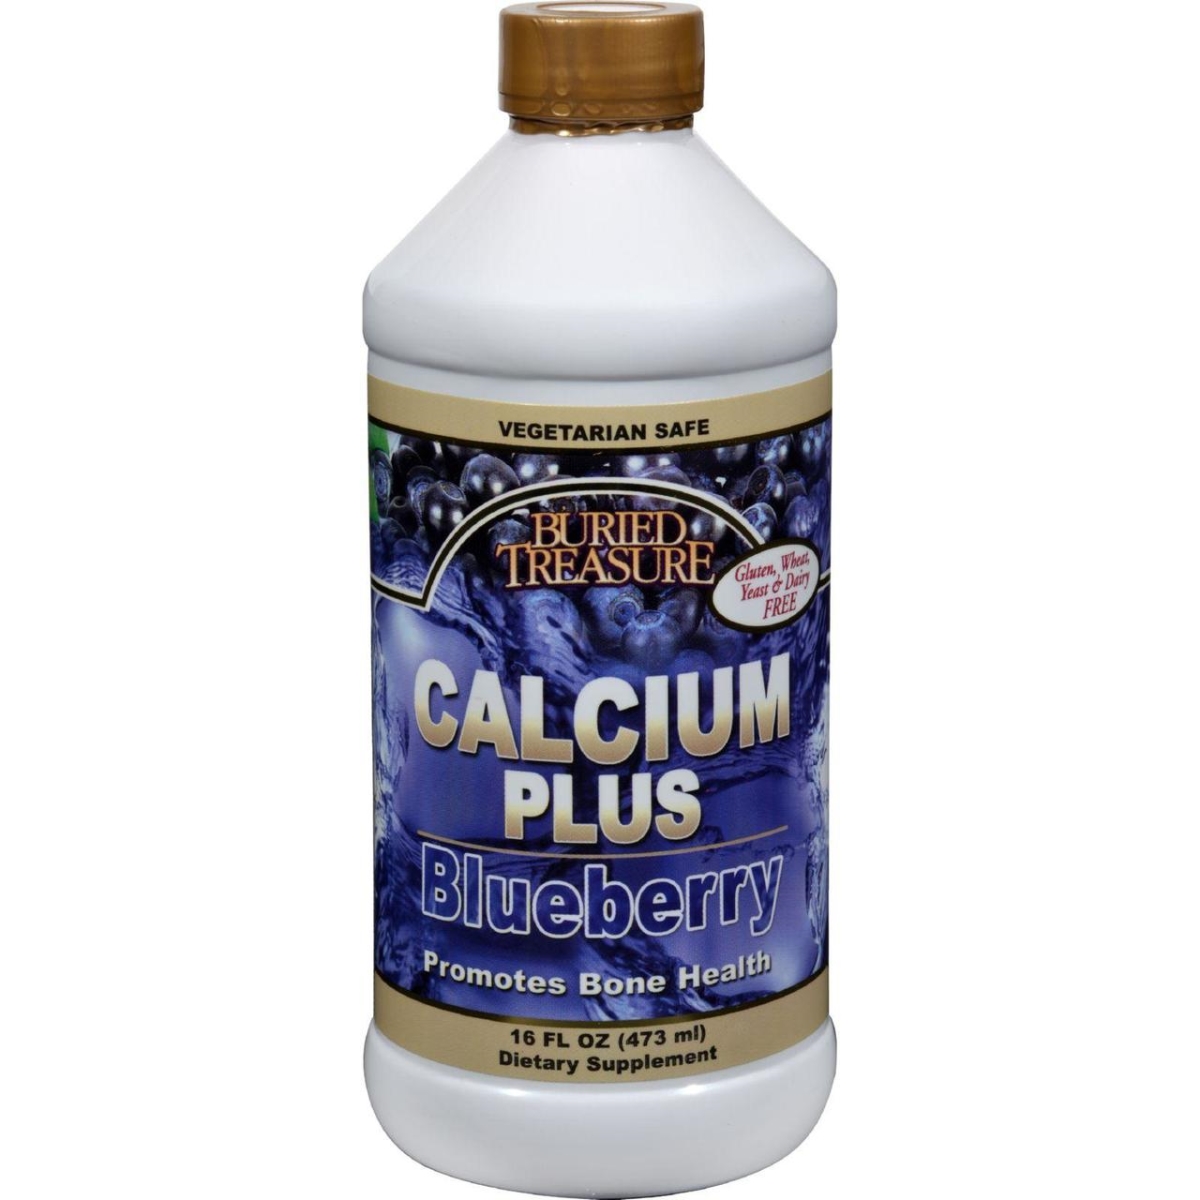 Hg0165670 16 Fl Oz Calcium Plus Blueberry